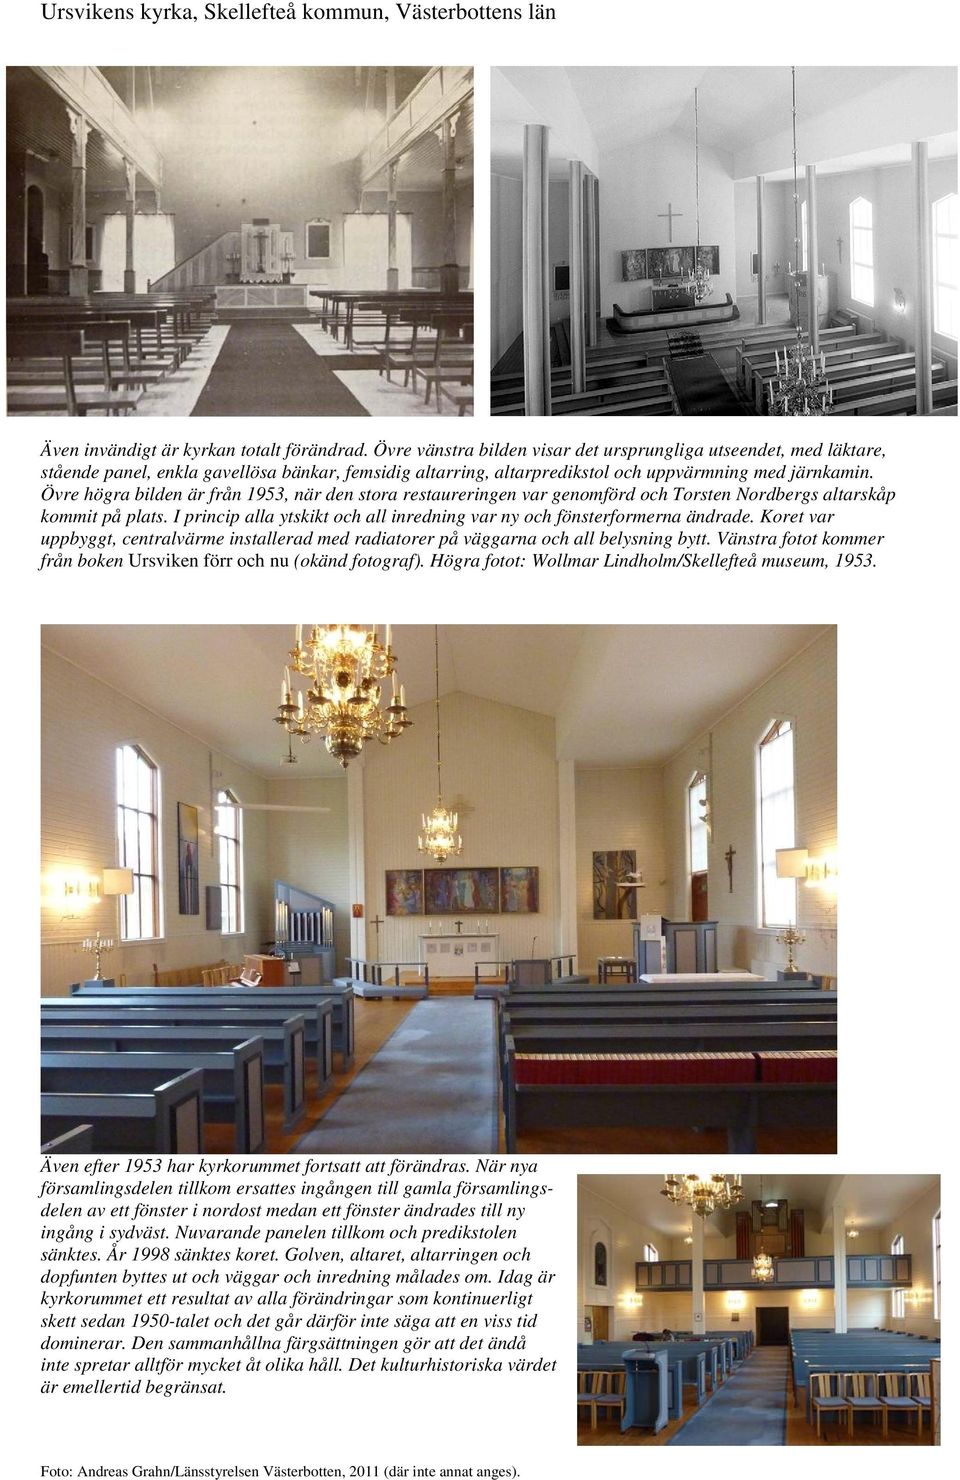 Övre högra bilden är från 1953, när den stora restaureringen var genomförd och Torsten Nordbergs altarskåp kommit på plats. I princip alla ytskikt och all inredning var ny och fönsterformerna ändrade.